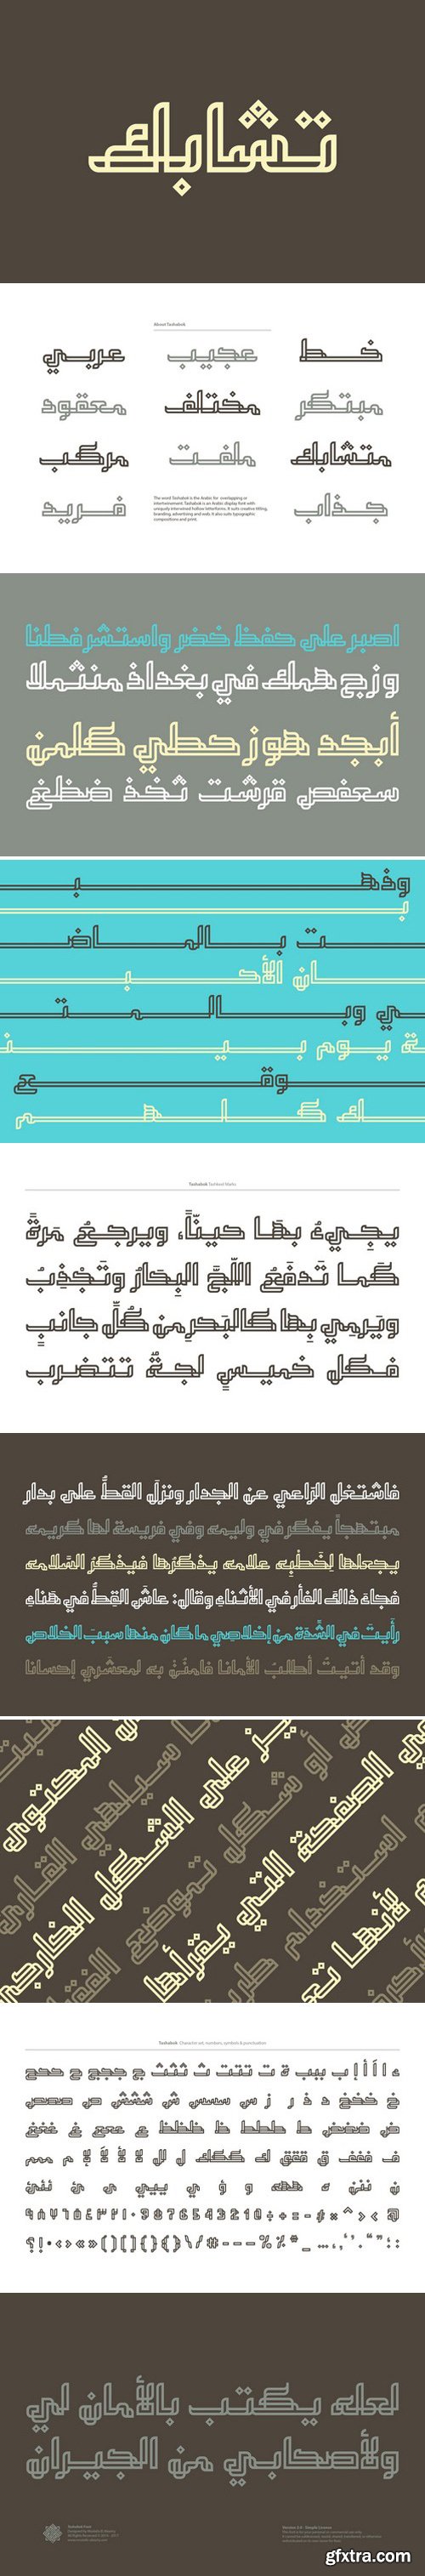 CM - Tashabok - Arabic Font 2006751